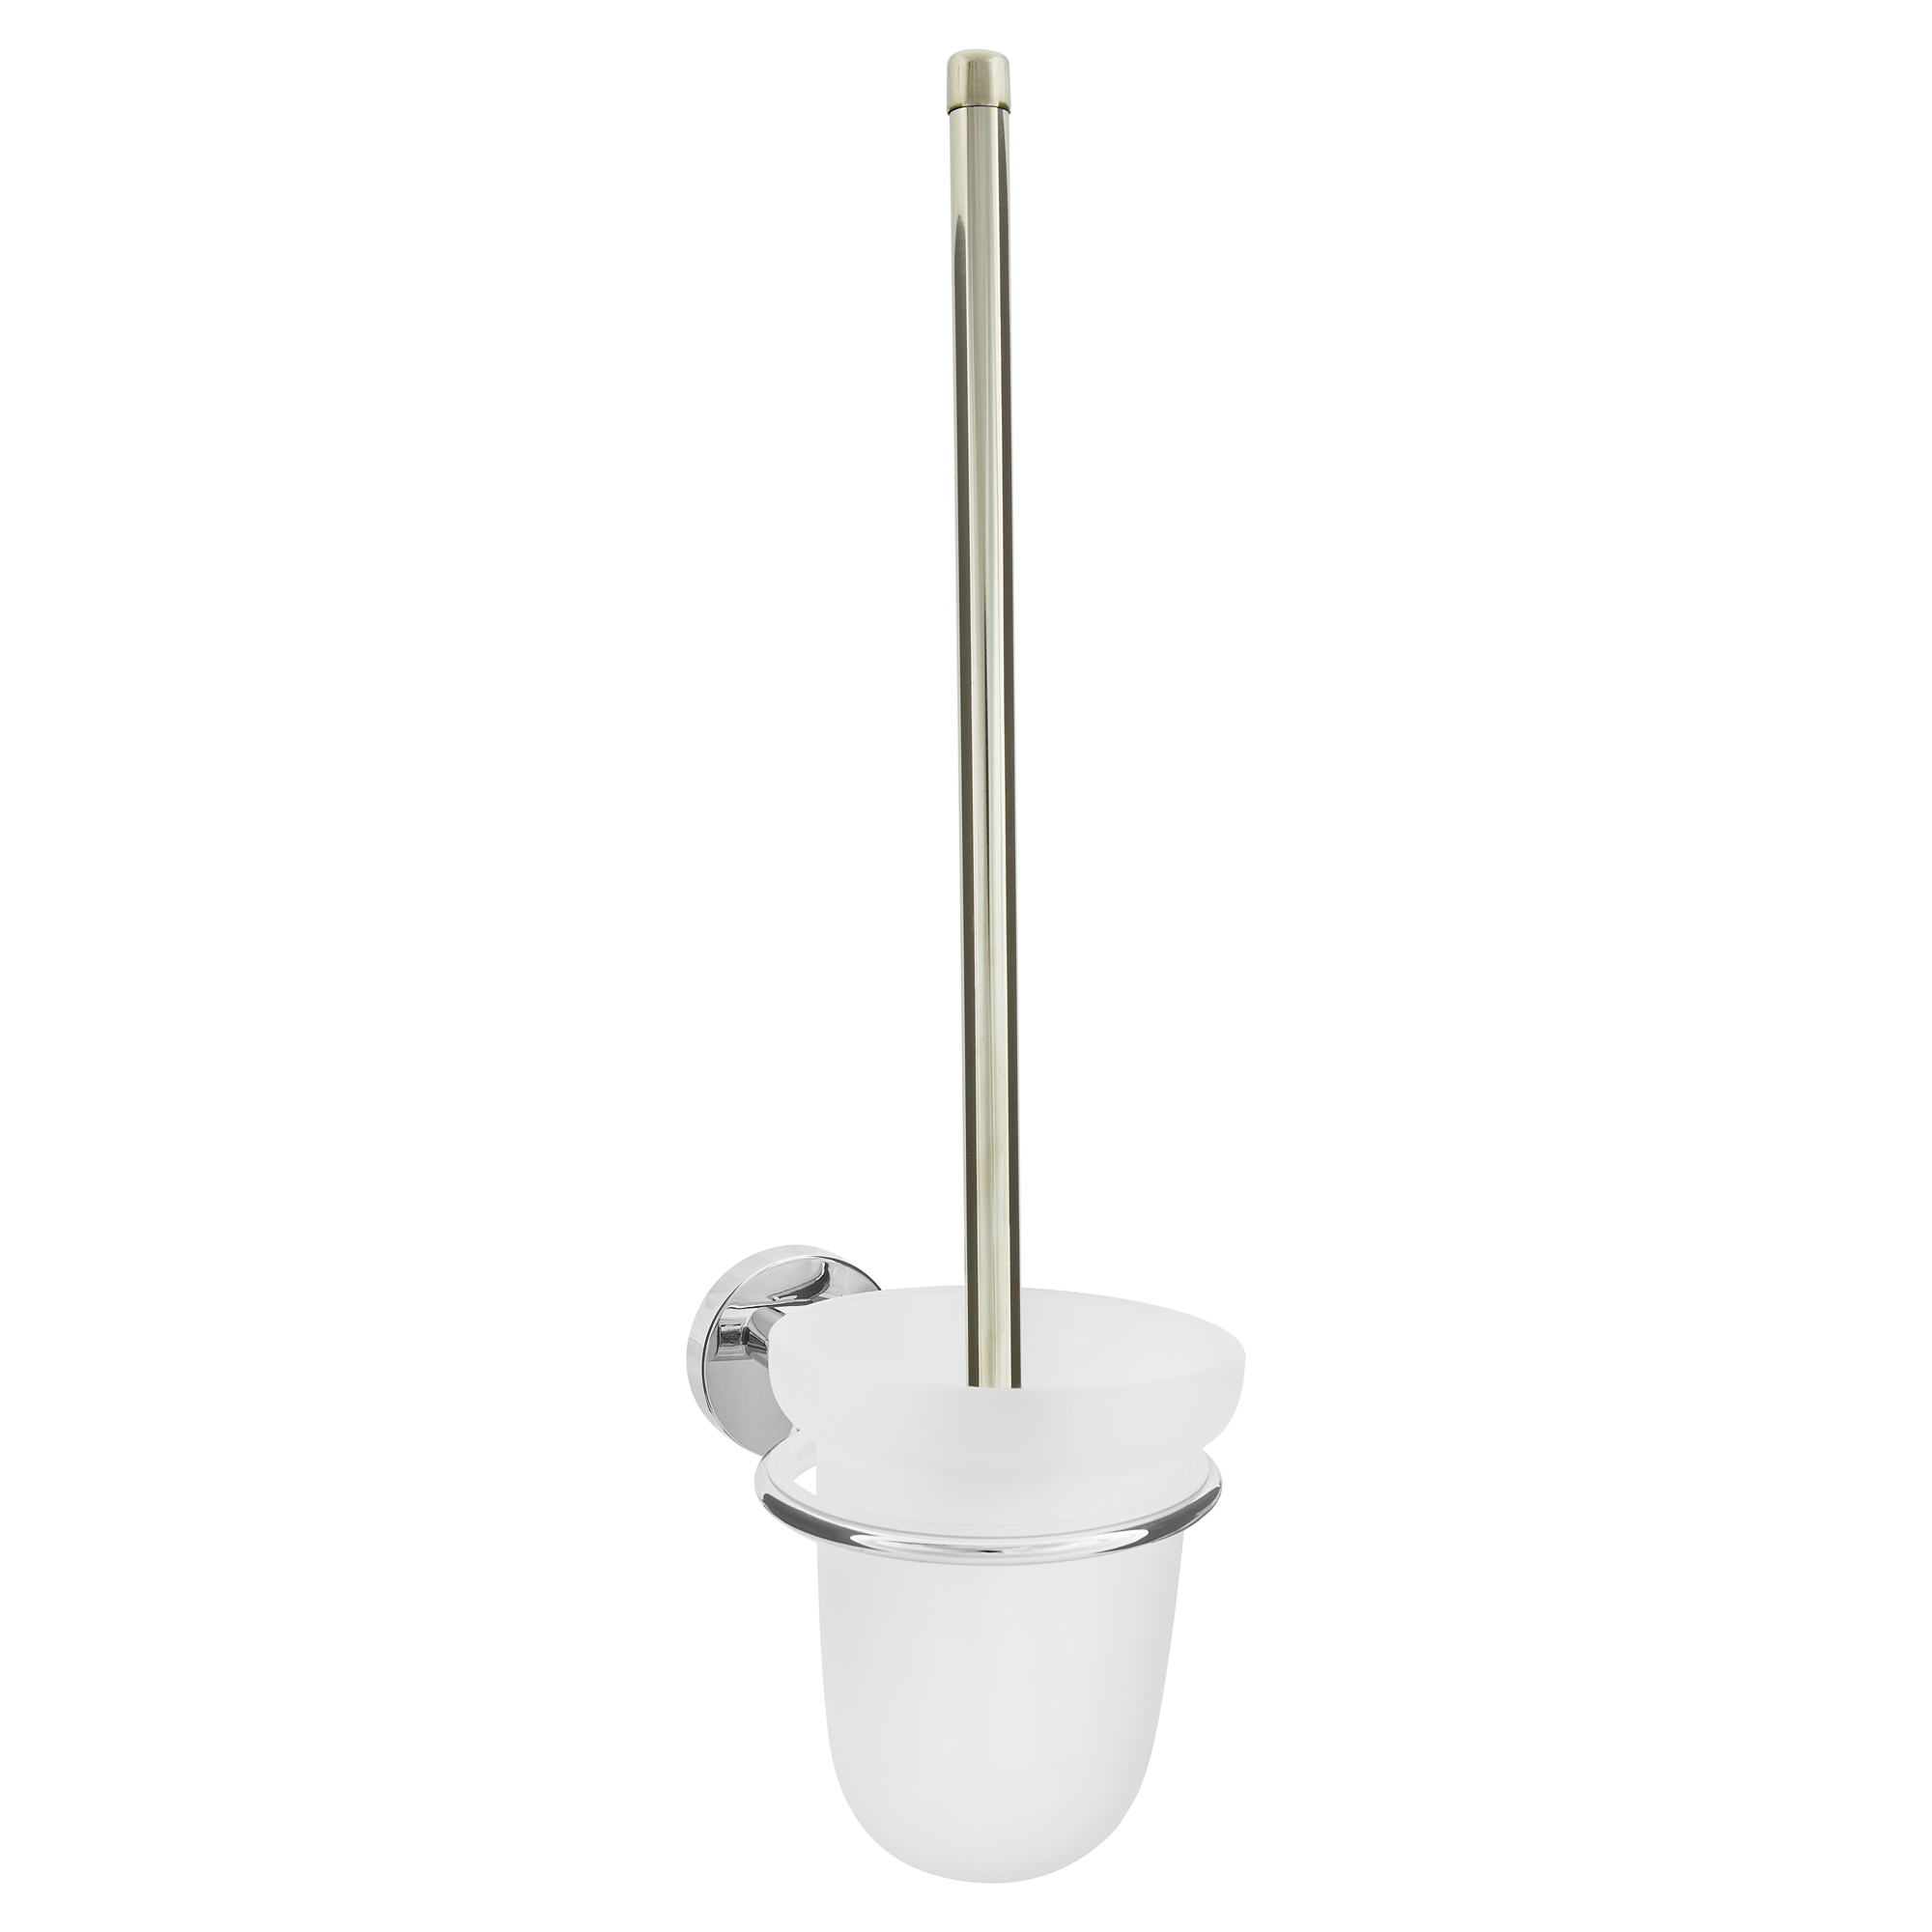 WC-Bürstengarnitur 'Siena' wandhängend rund verchromt/weiß + product picture